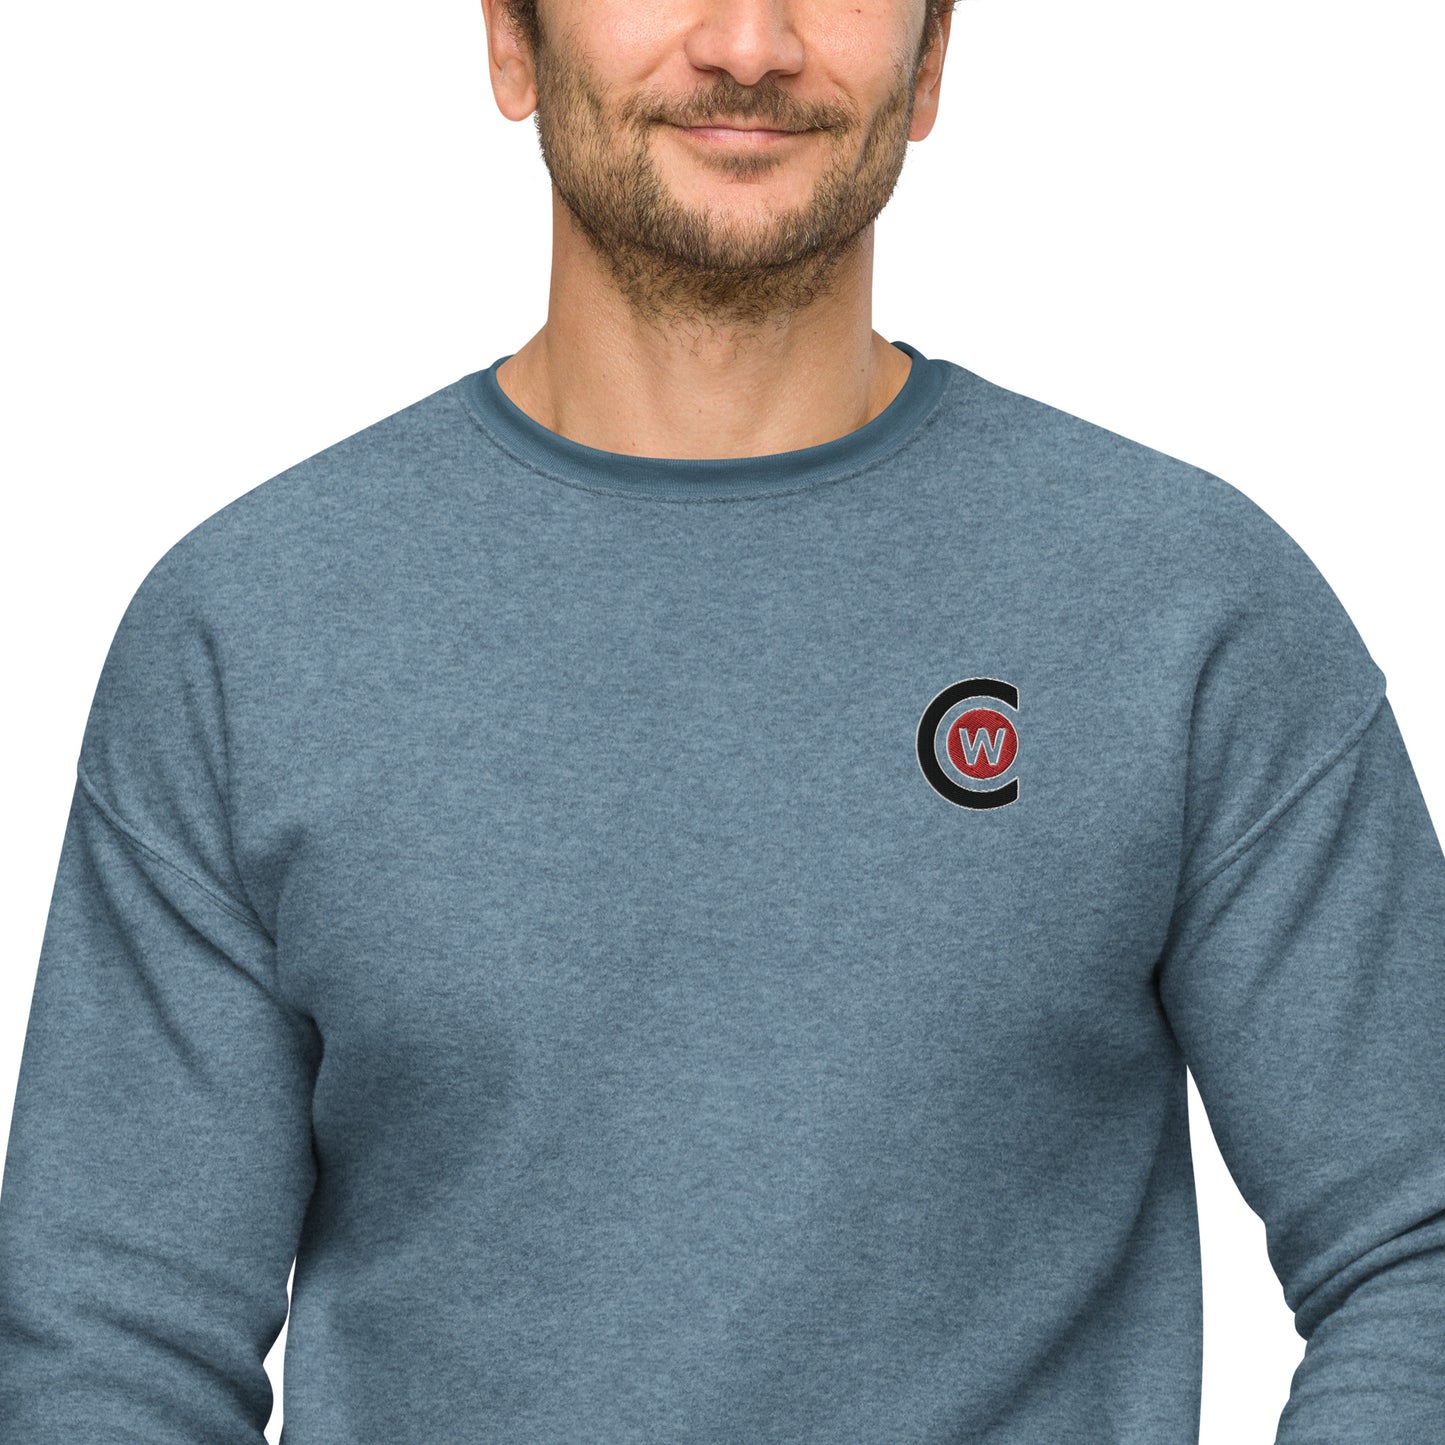 Men's sueded fleece sweatshirt